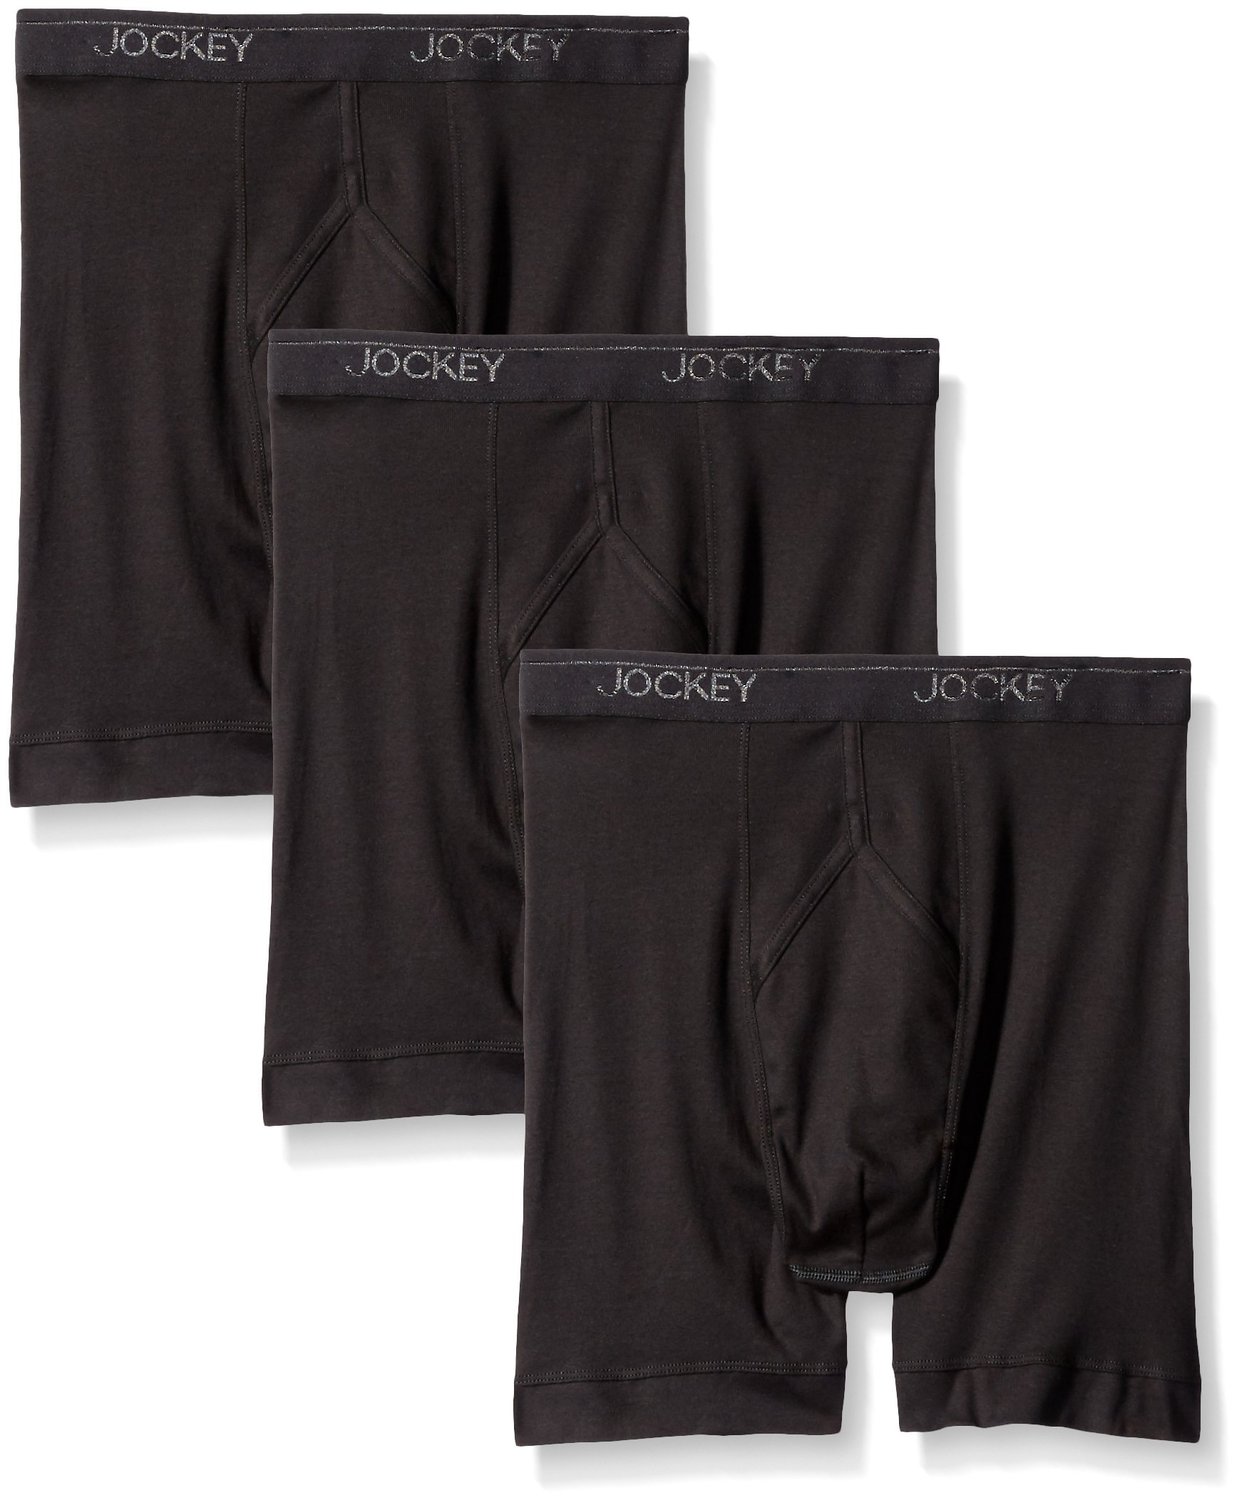 Jockey Men's Underwear Staycool Midway Brief - 3 Pack, black, M ...